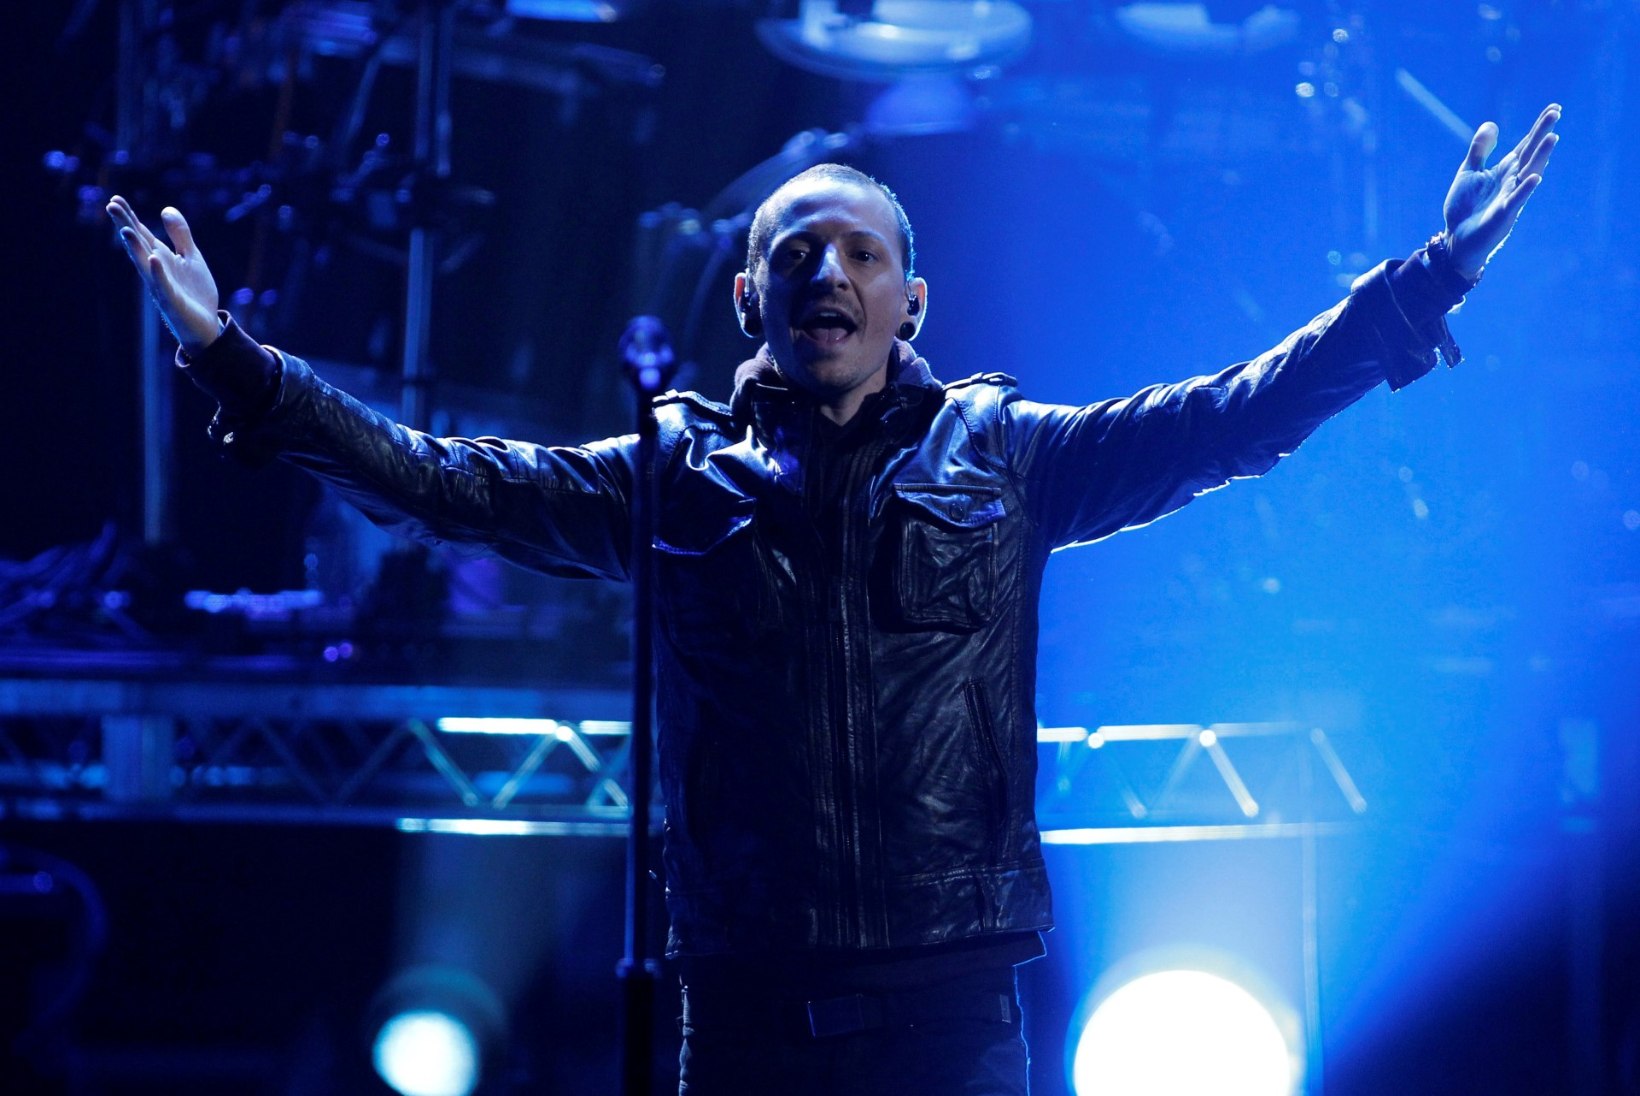 Kas Linkin Parki laulja vaimu murdis hea sõbra Chris Cornelli enesetapp?